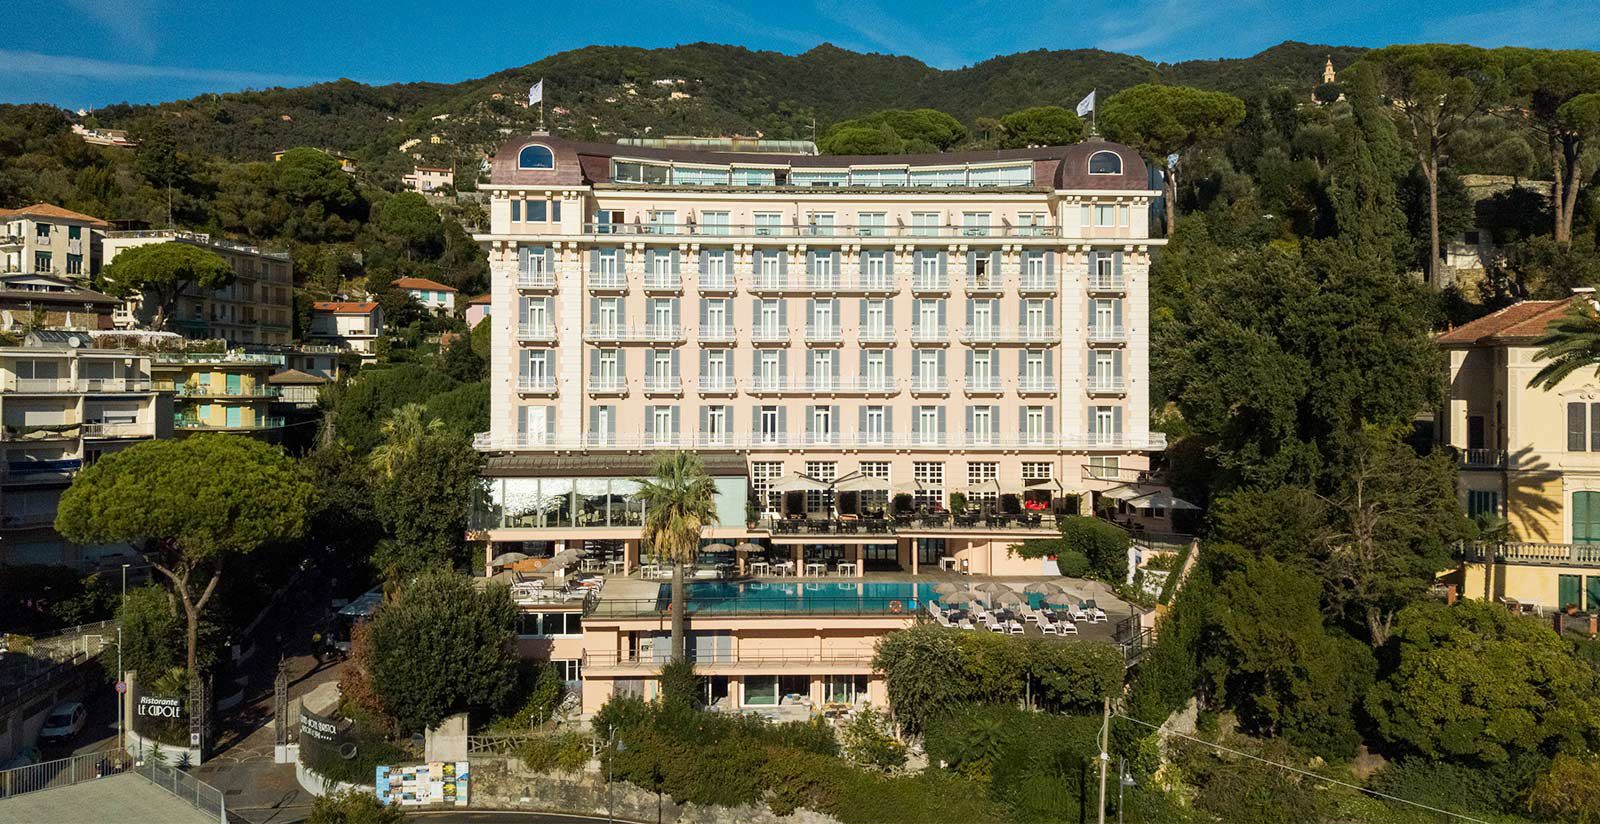 Grand Hotel Bristol - Hotel 5 stelle vicino al salone nautico di Genova 5